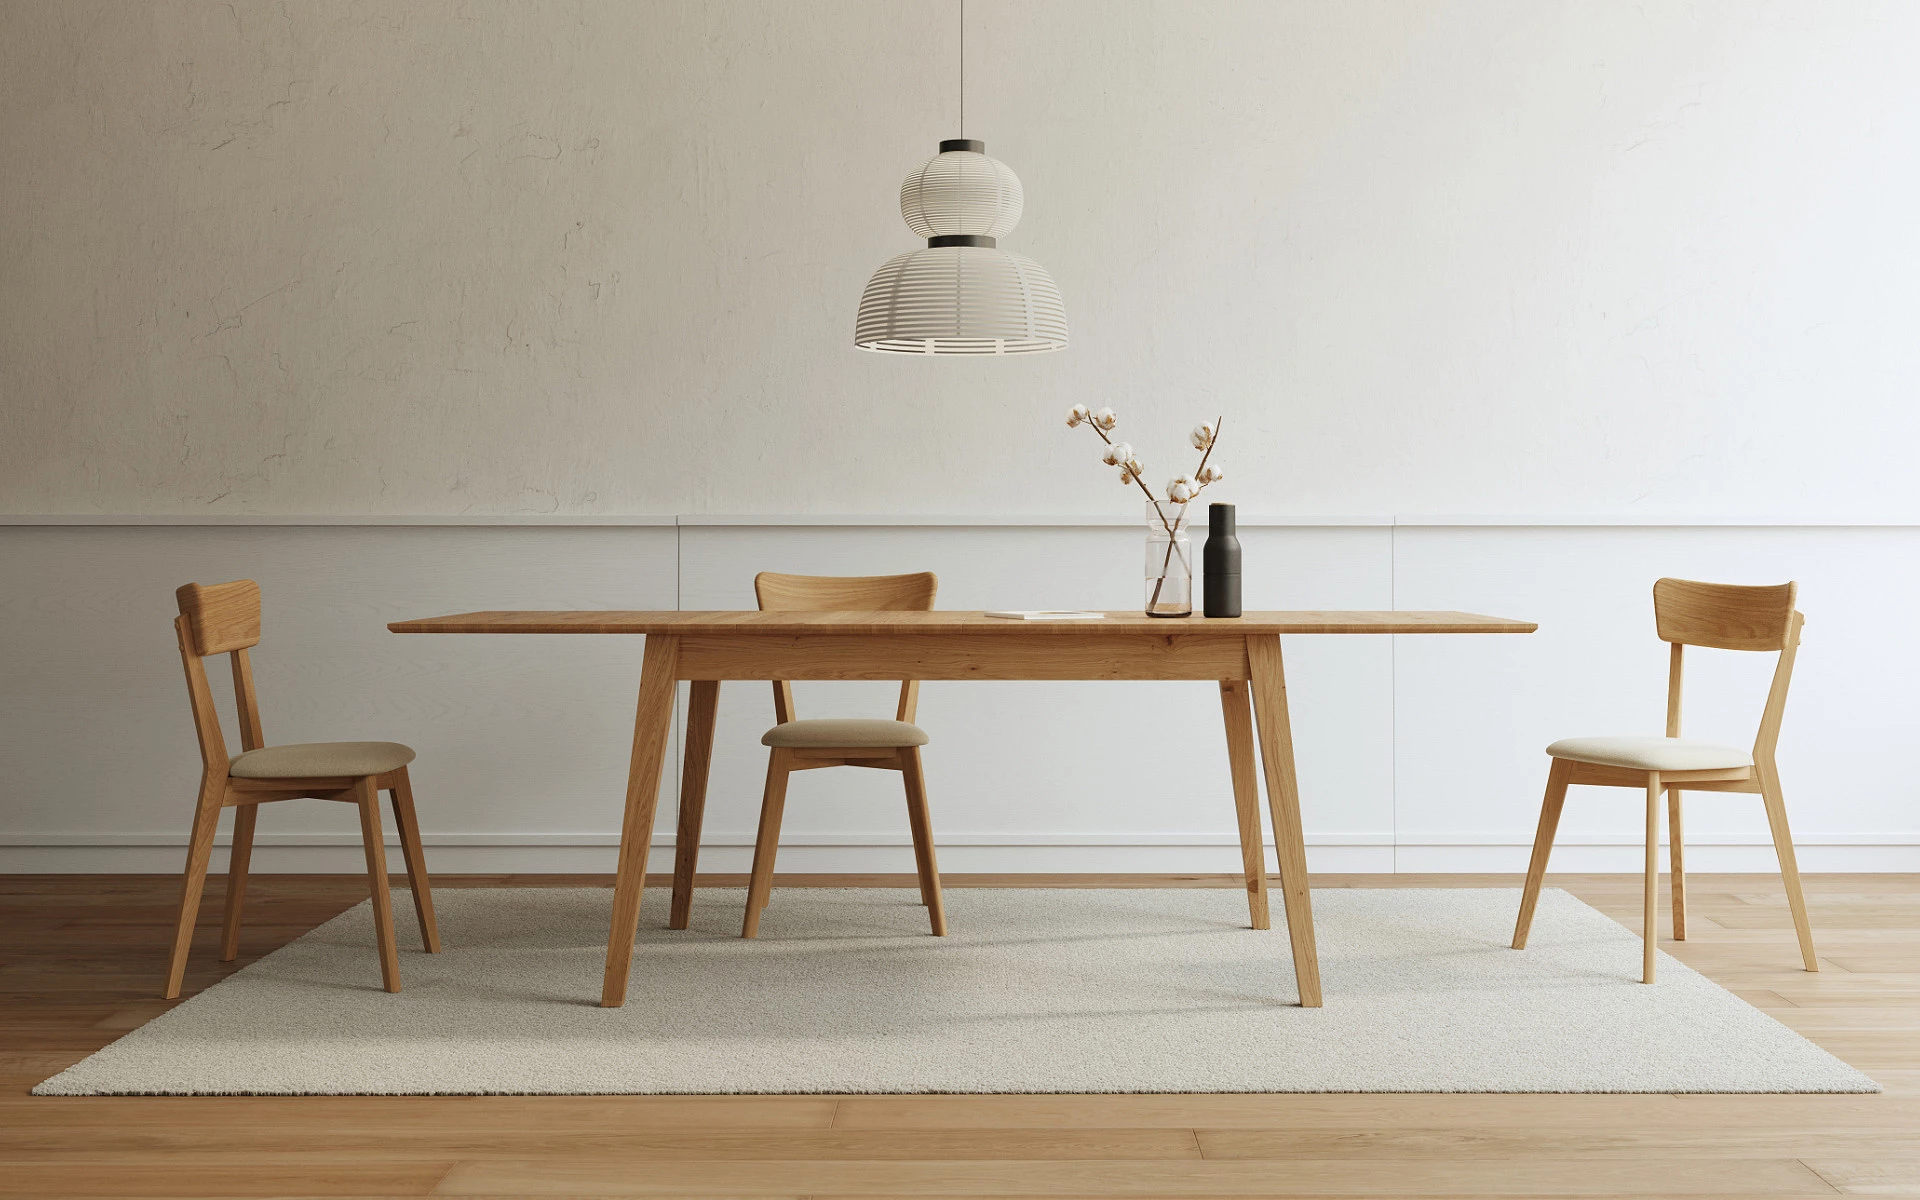 Dubové stoly a židle 100% masivní dřevo